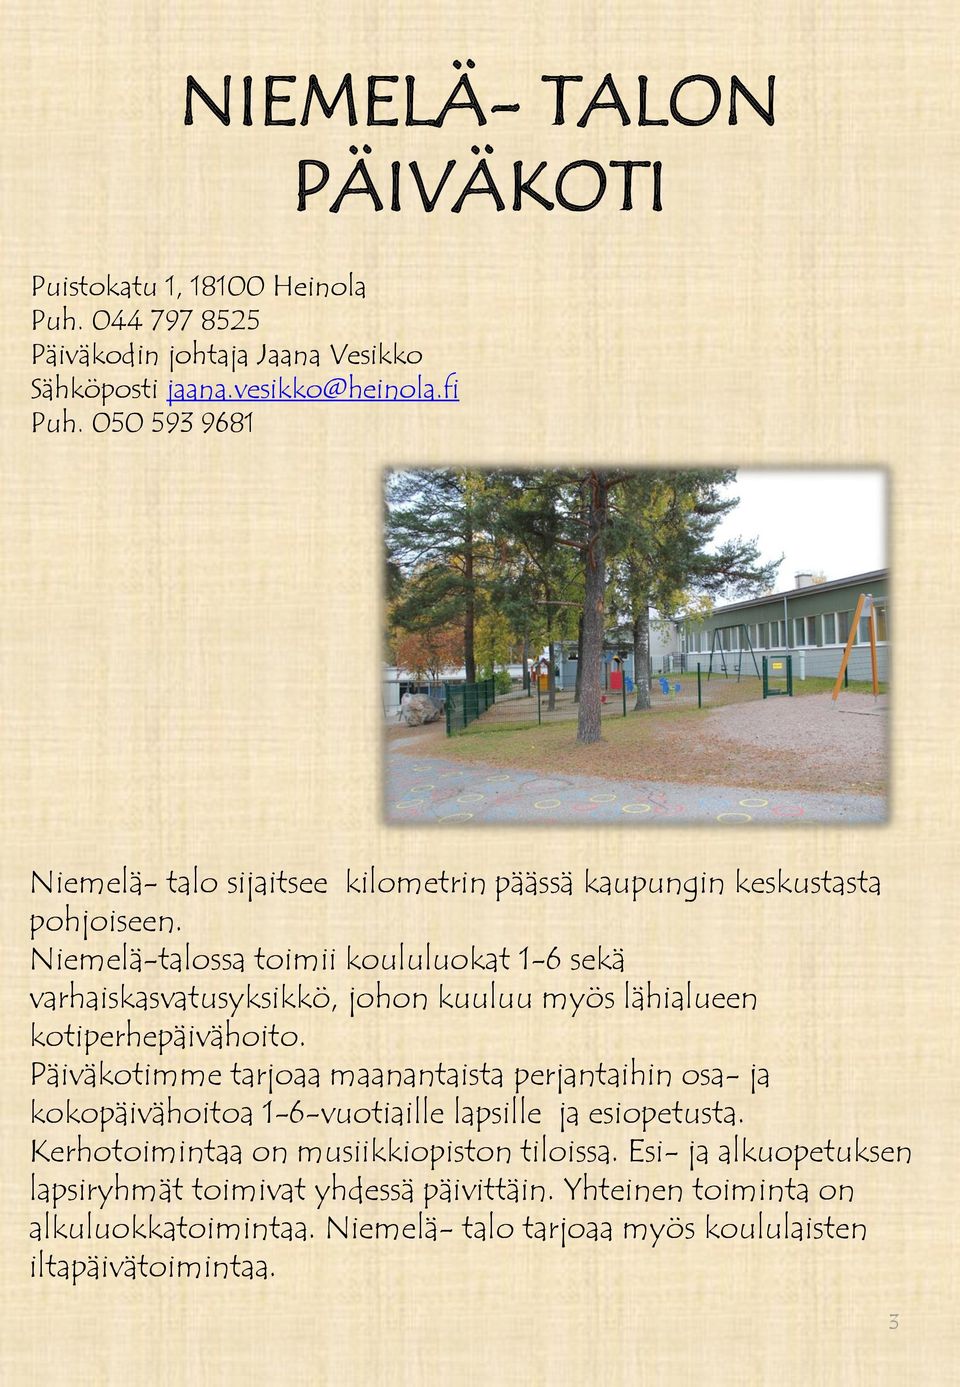 Niemelä-talossa toimii koululuokat 1-6 sekä varhaiskasvatusyksikkö, johon kuuluu myös lähialueen kotiperhepäivähoito.